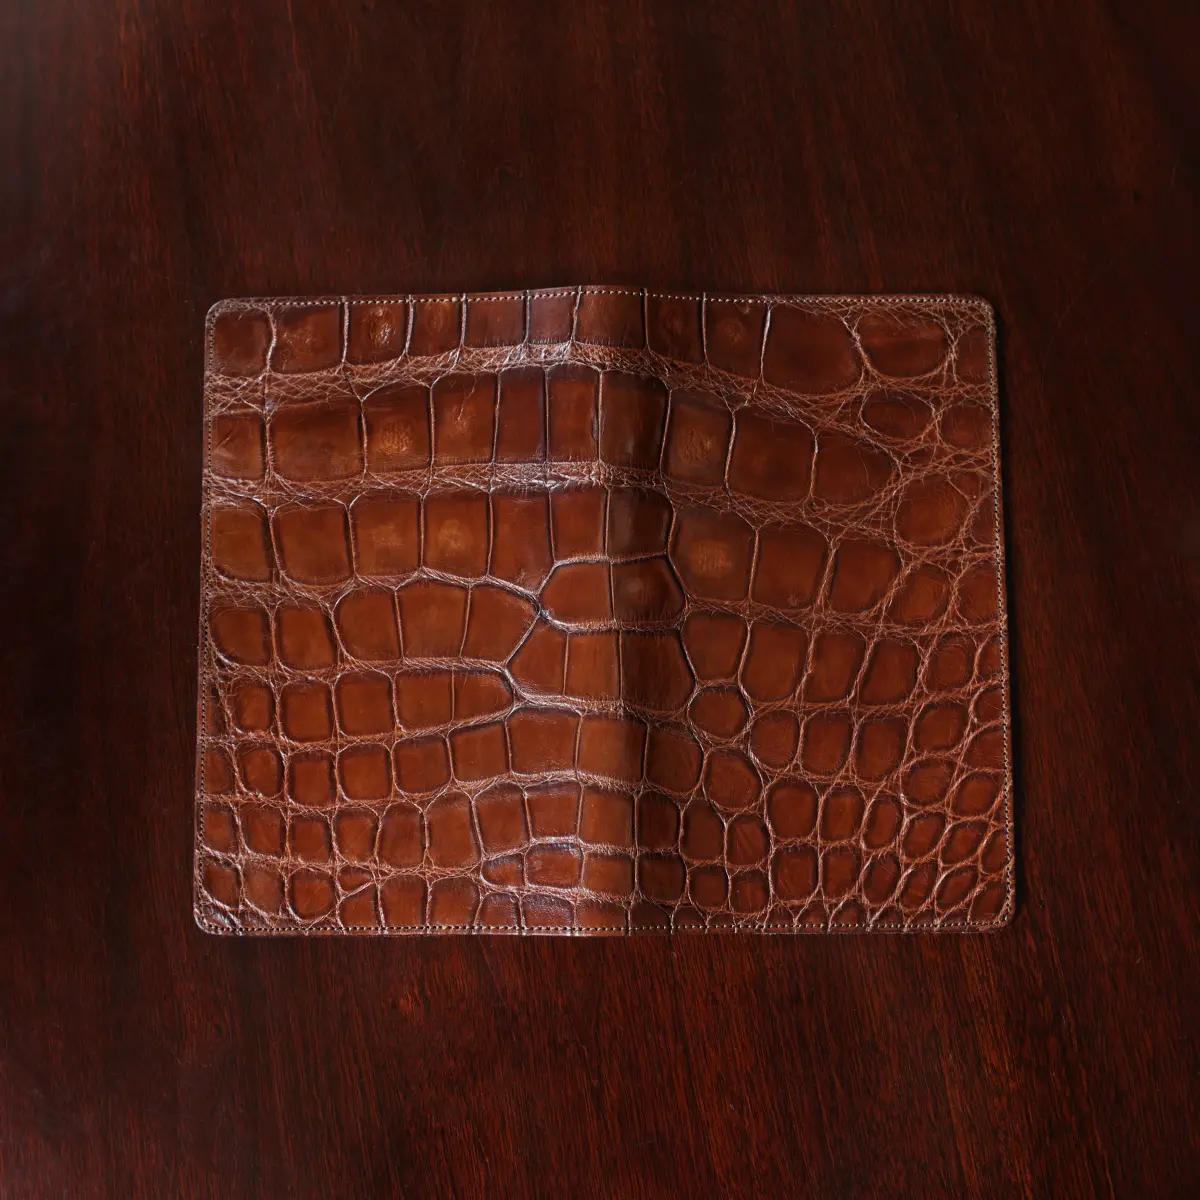 Pink Backbone Crocodile Leather Long Wallet